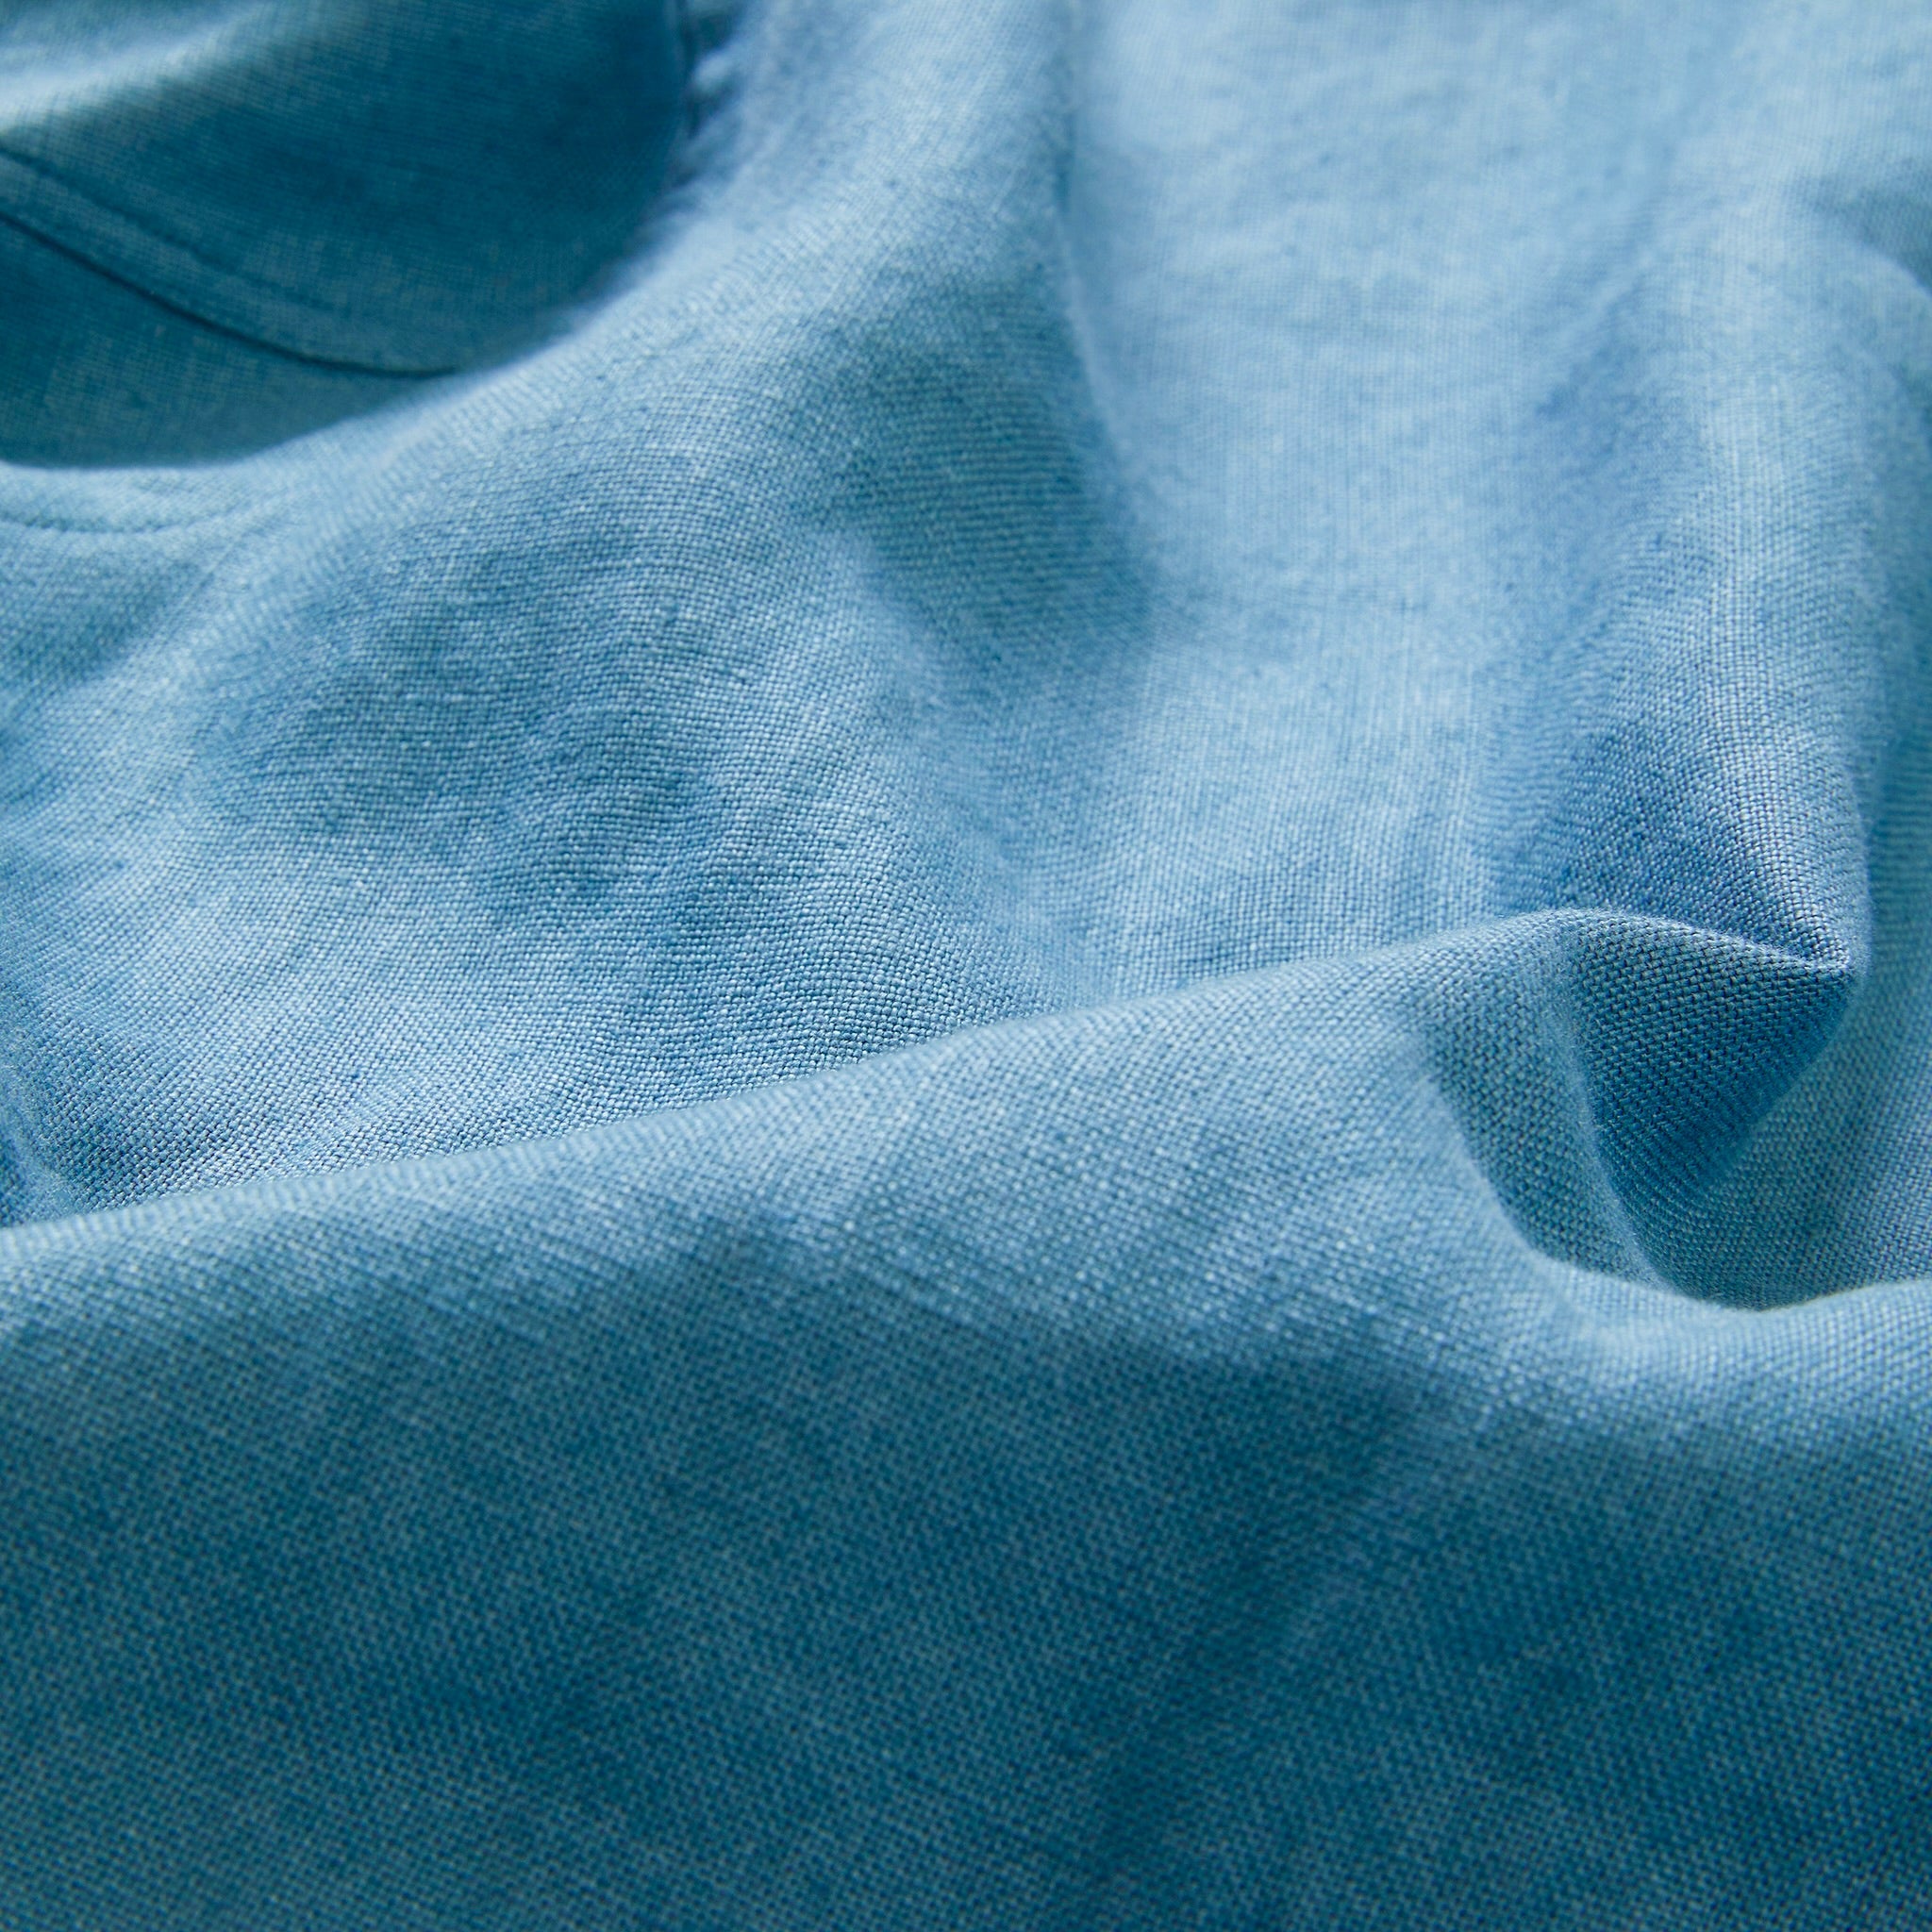 100% Linen Overshirt - Teal Blue